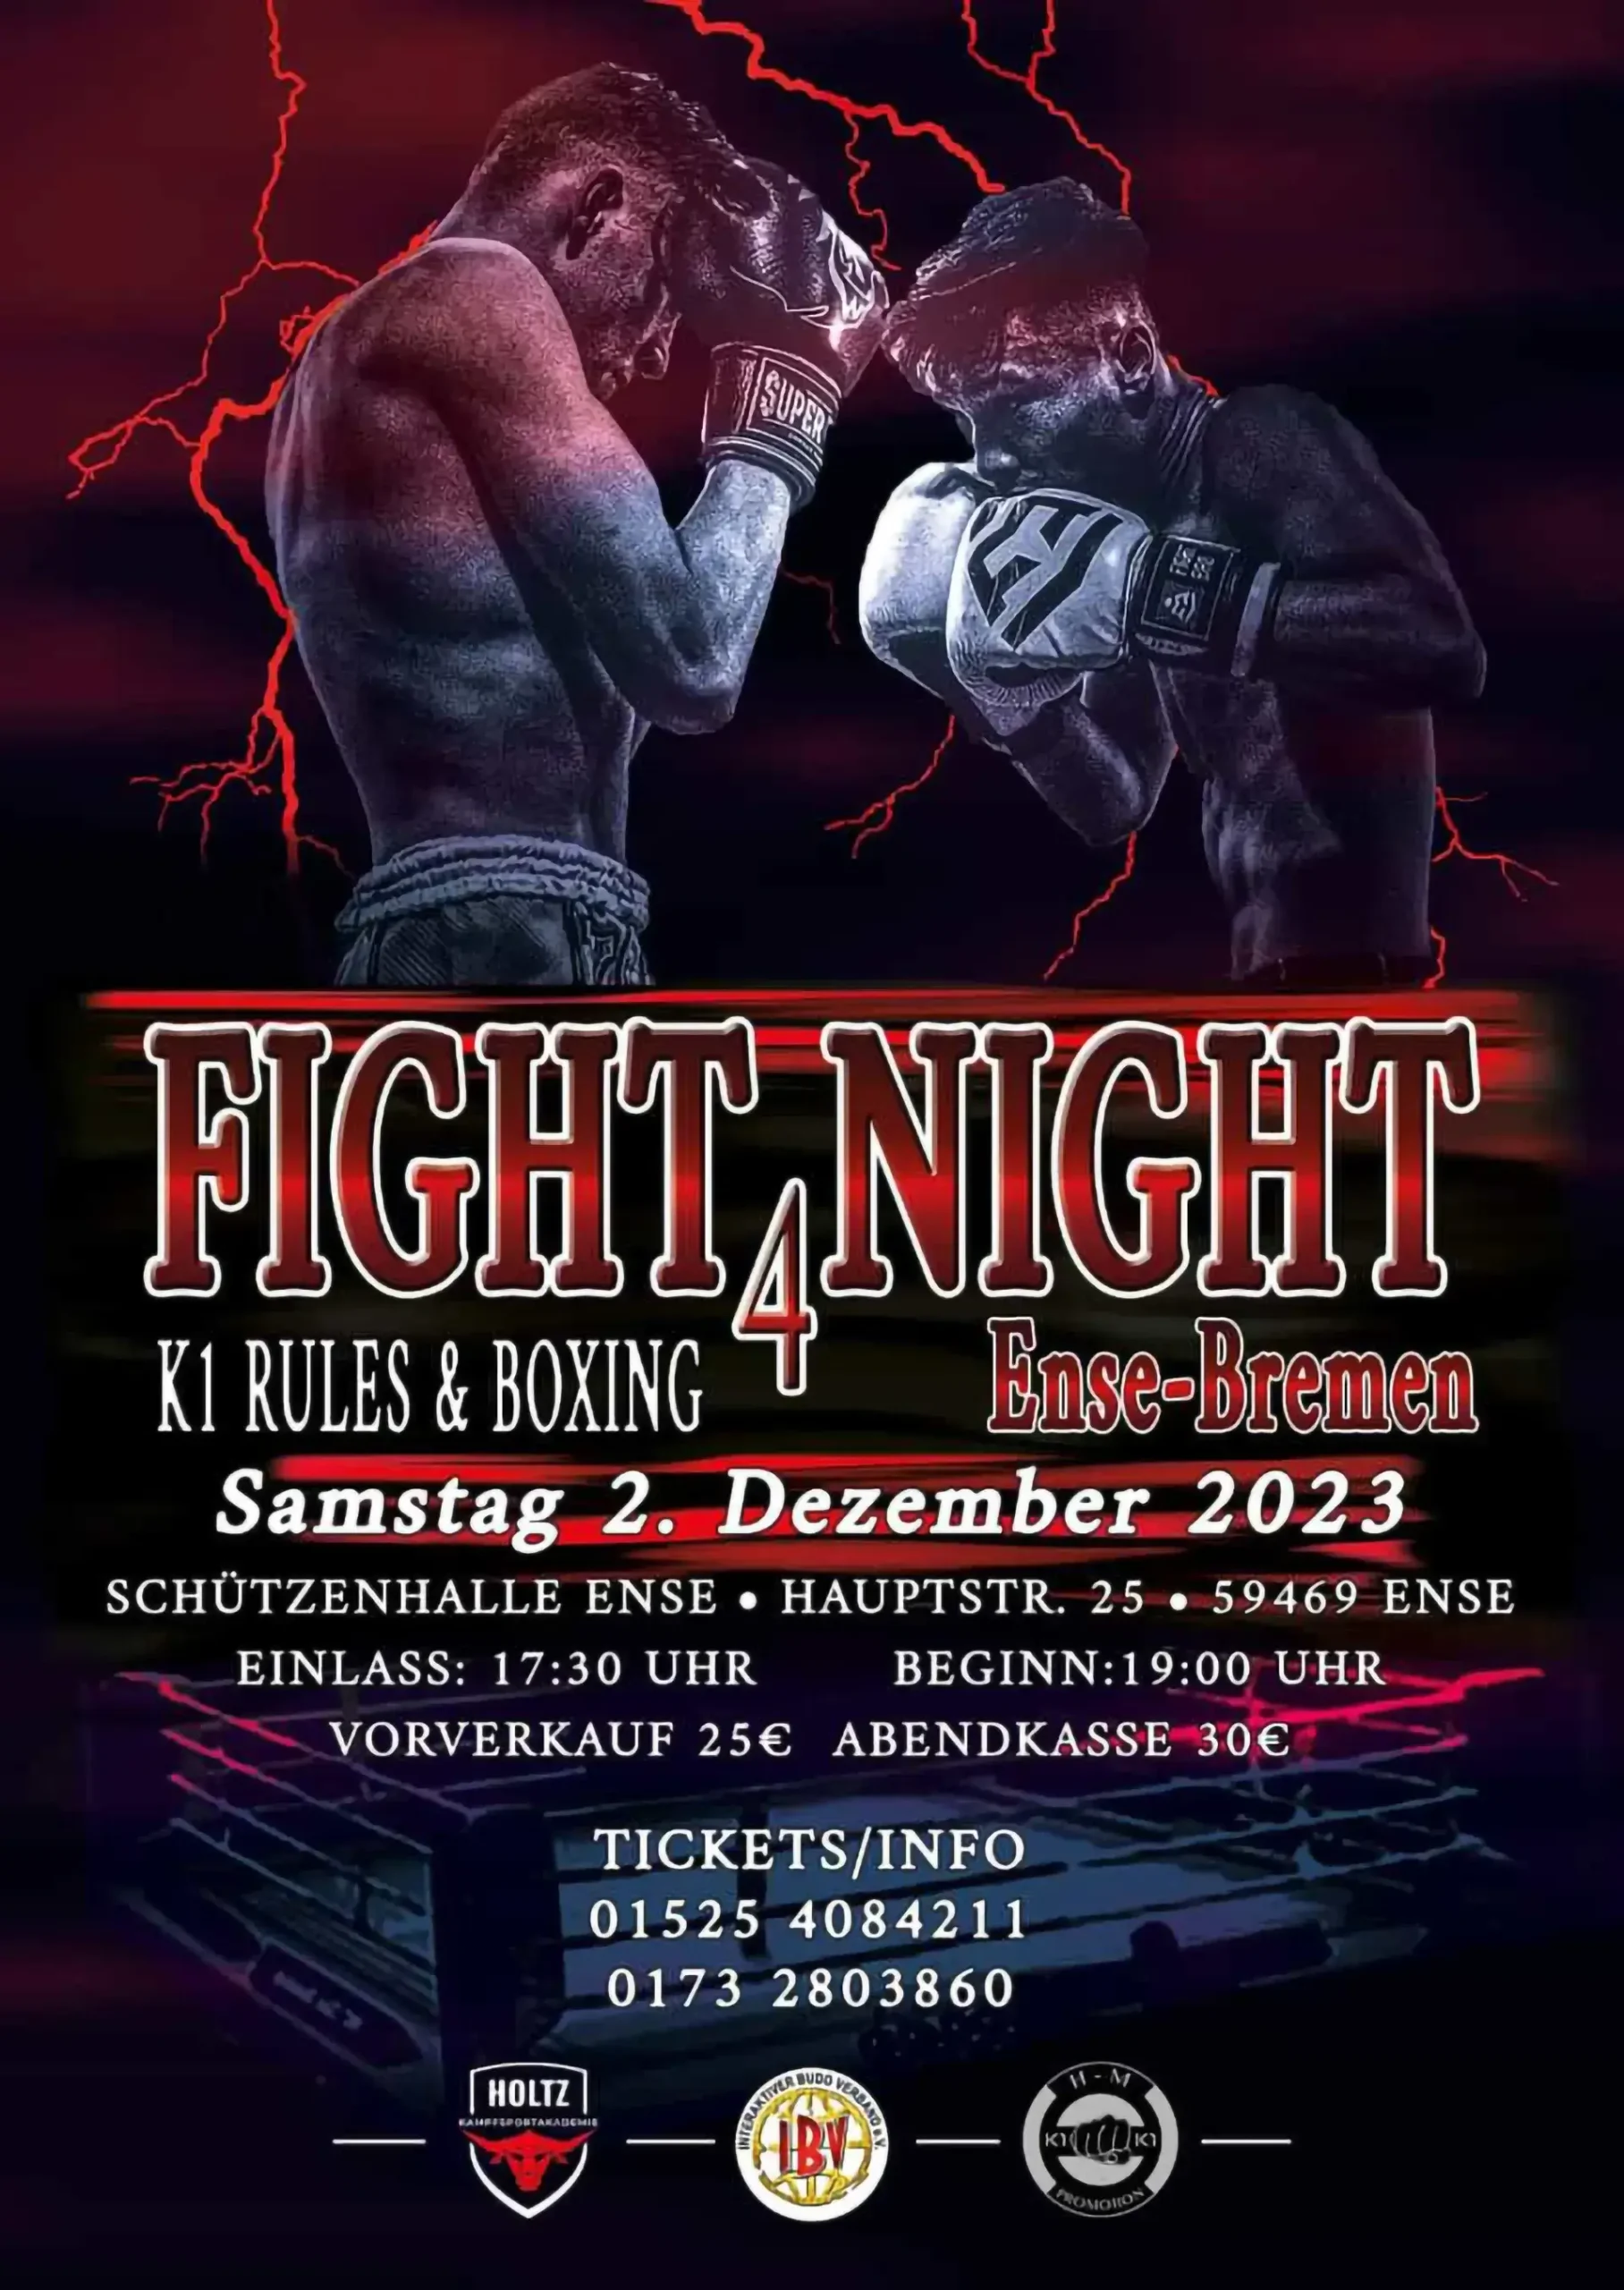 4te Fight Night am 2 Dezember 2023 in Ense-Bremen